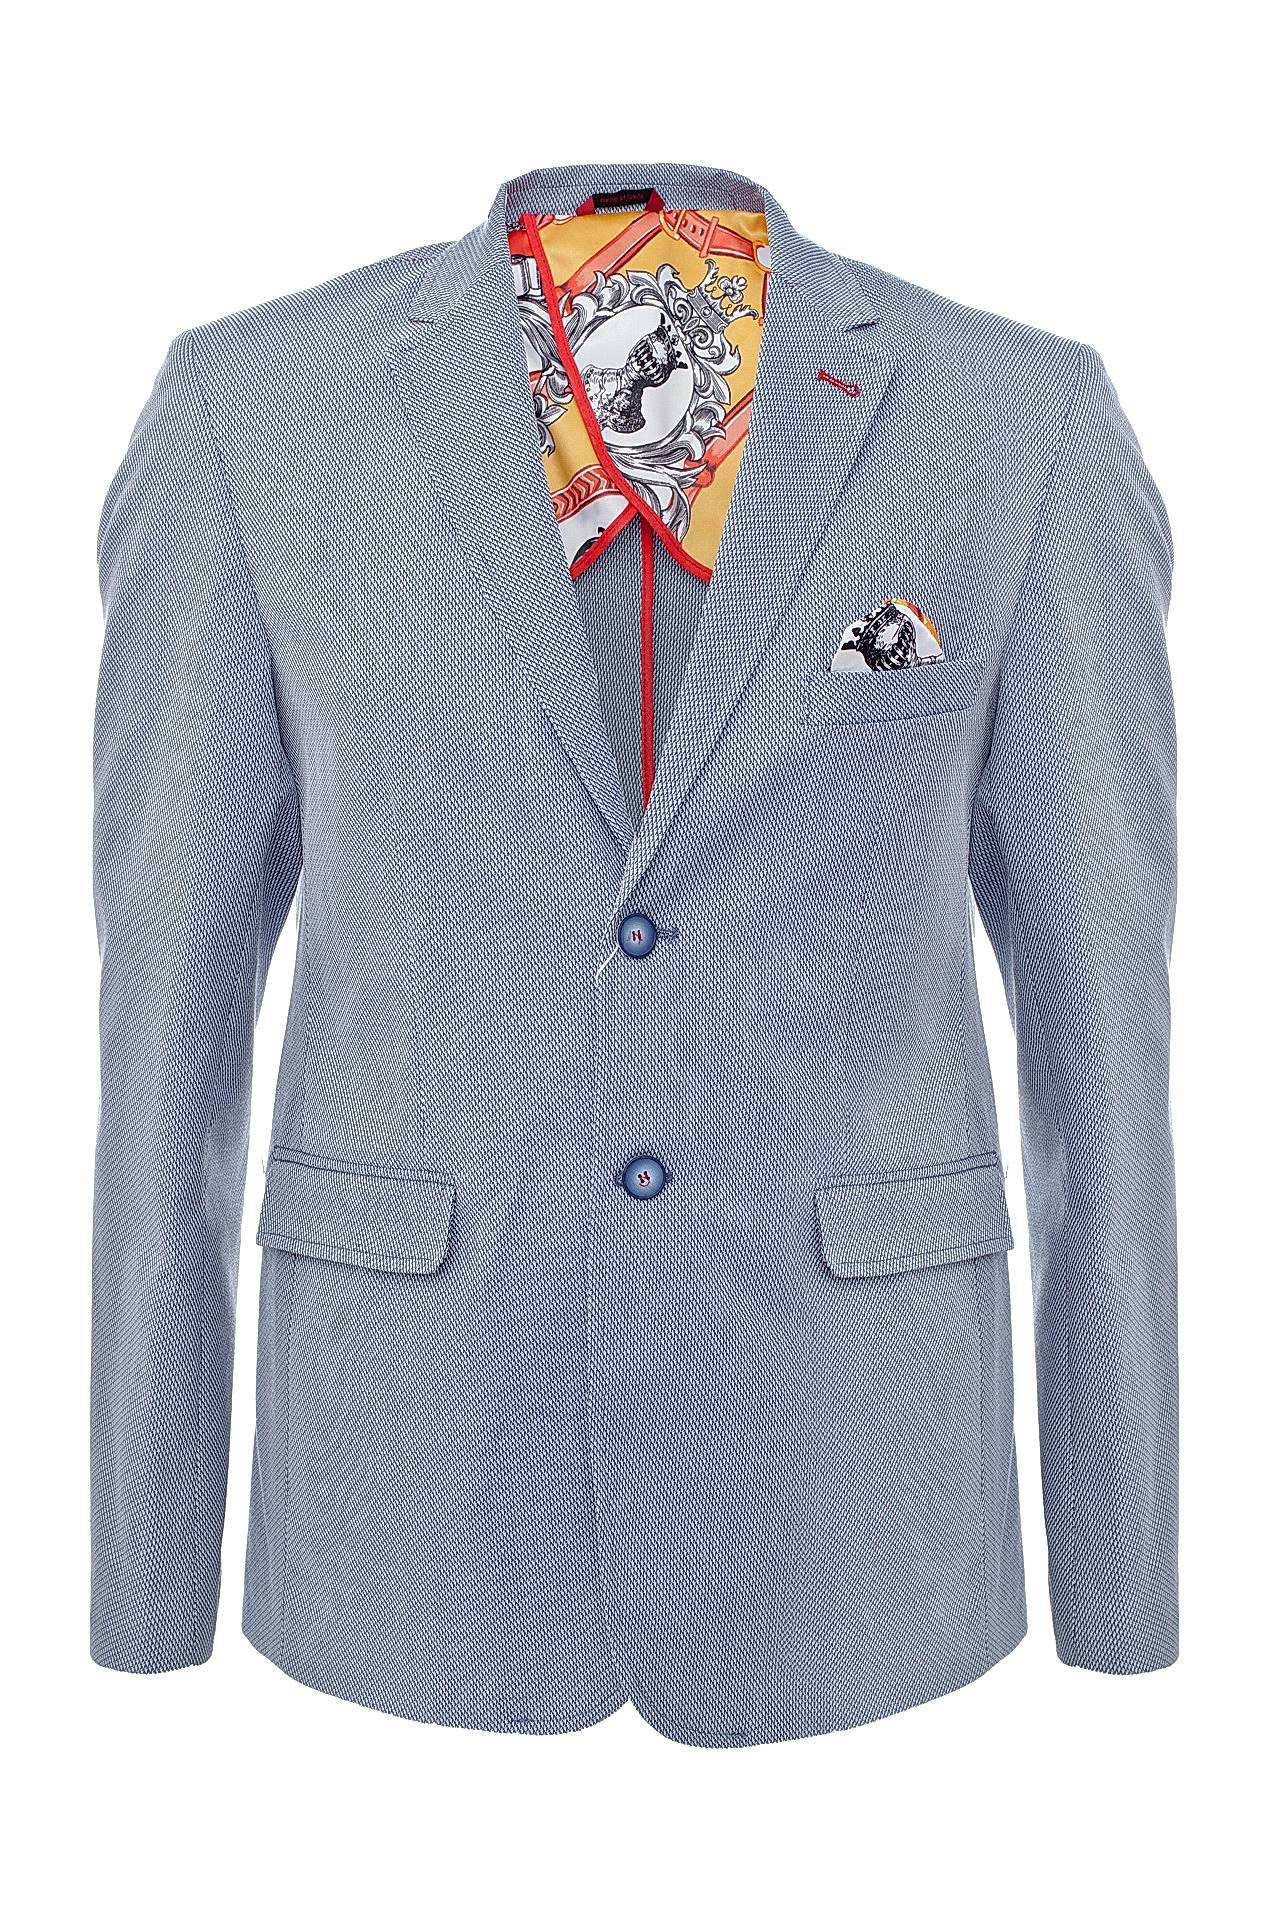 Одежда мужская Пиджак GIANNI LUPO (VICTORIA/16.2). Купить за 12900 руб.